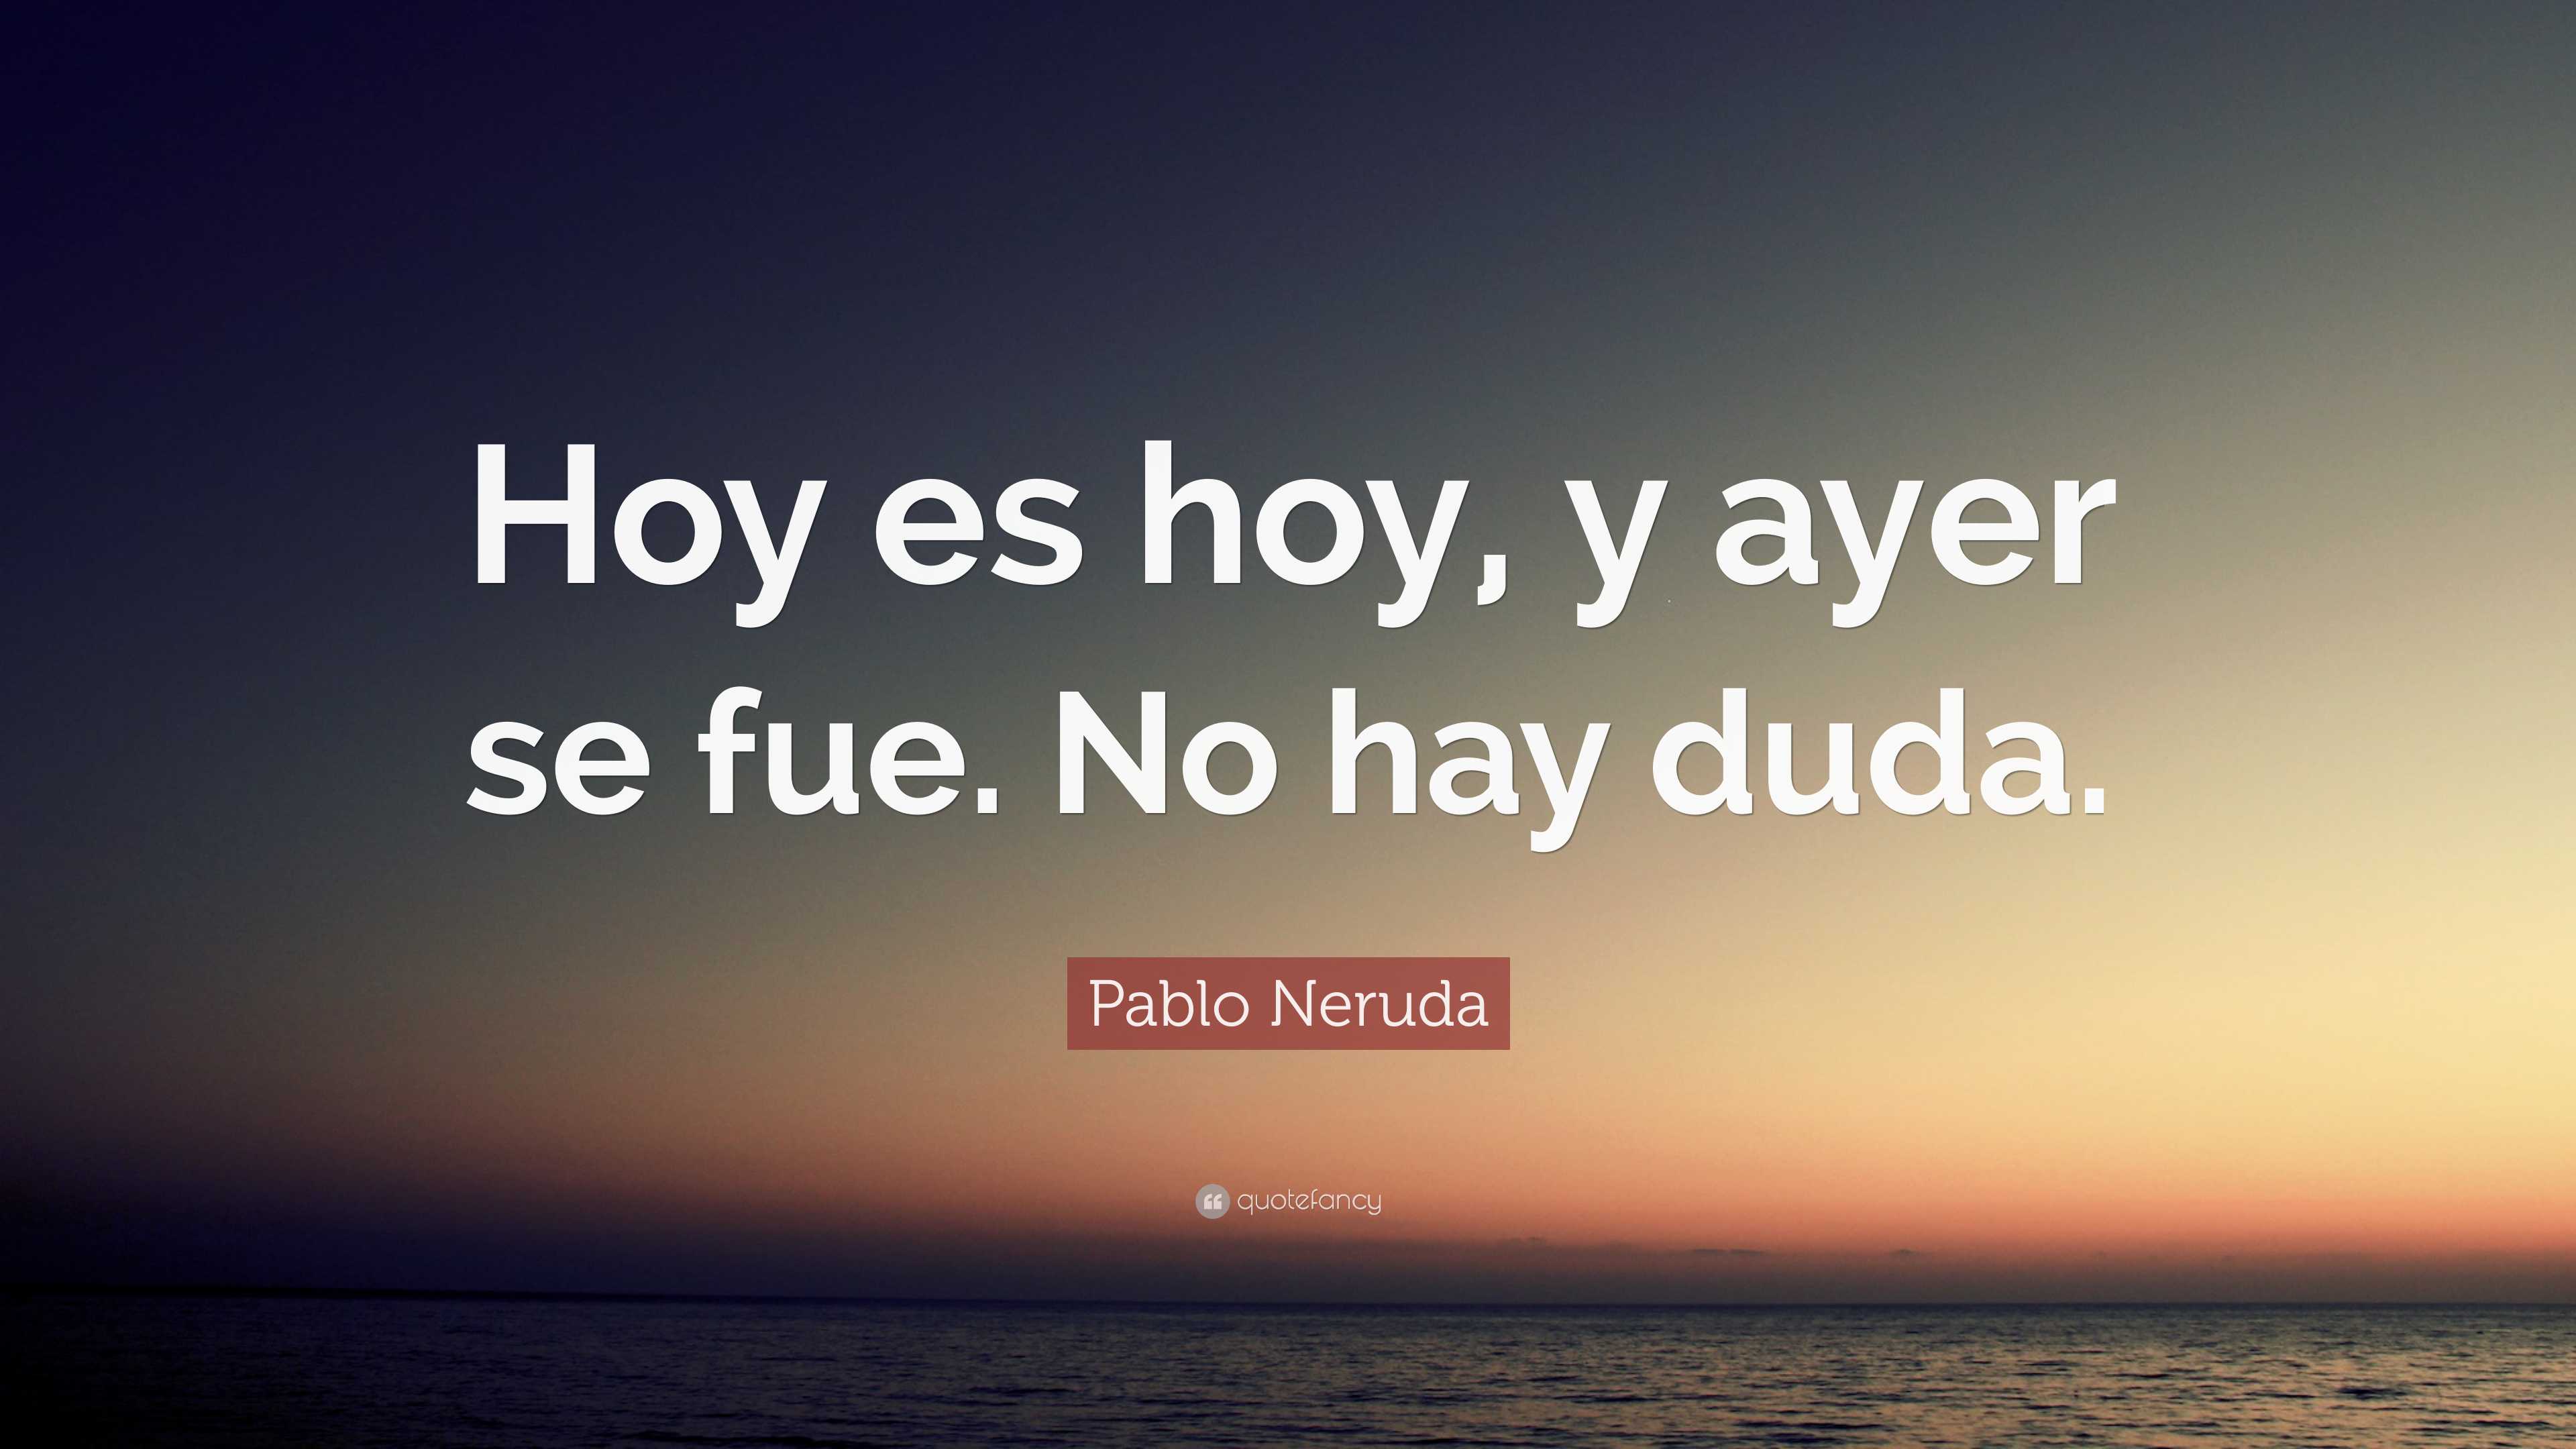 Pablo Neruda Quote: “Hoy es hoy, y ayer se fue. No hay duda.”